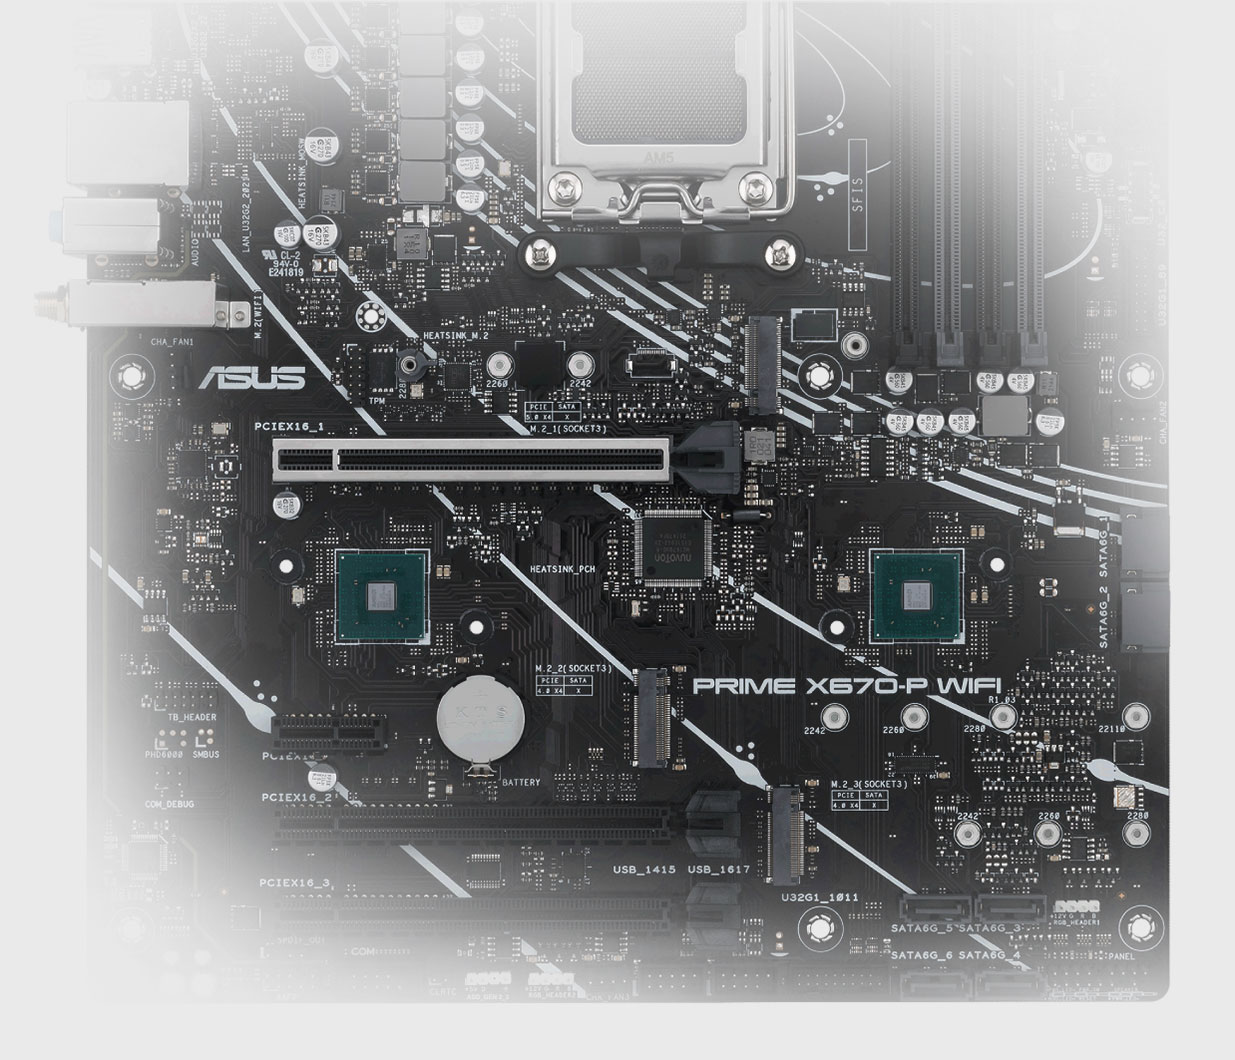 Het PRIME X670-P WIFI-moederbord biedt PCIe 5.0 M.2 ondersteuning.